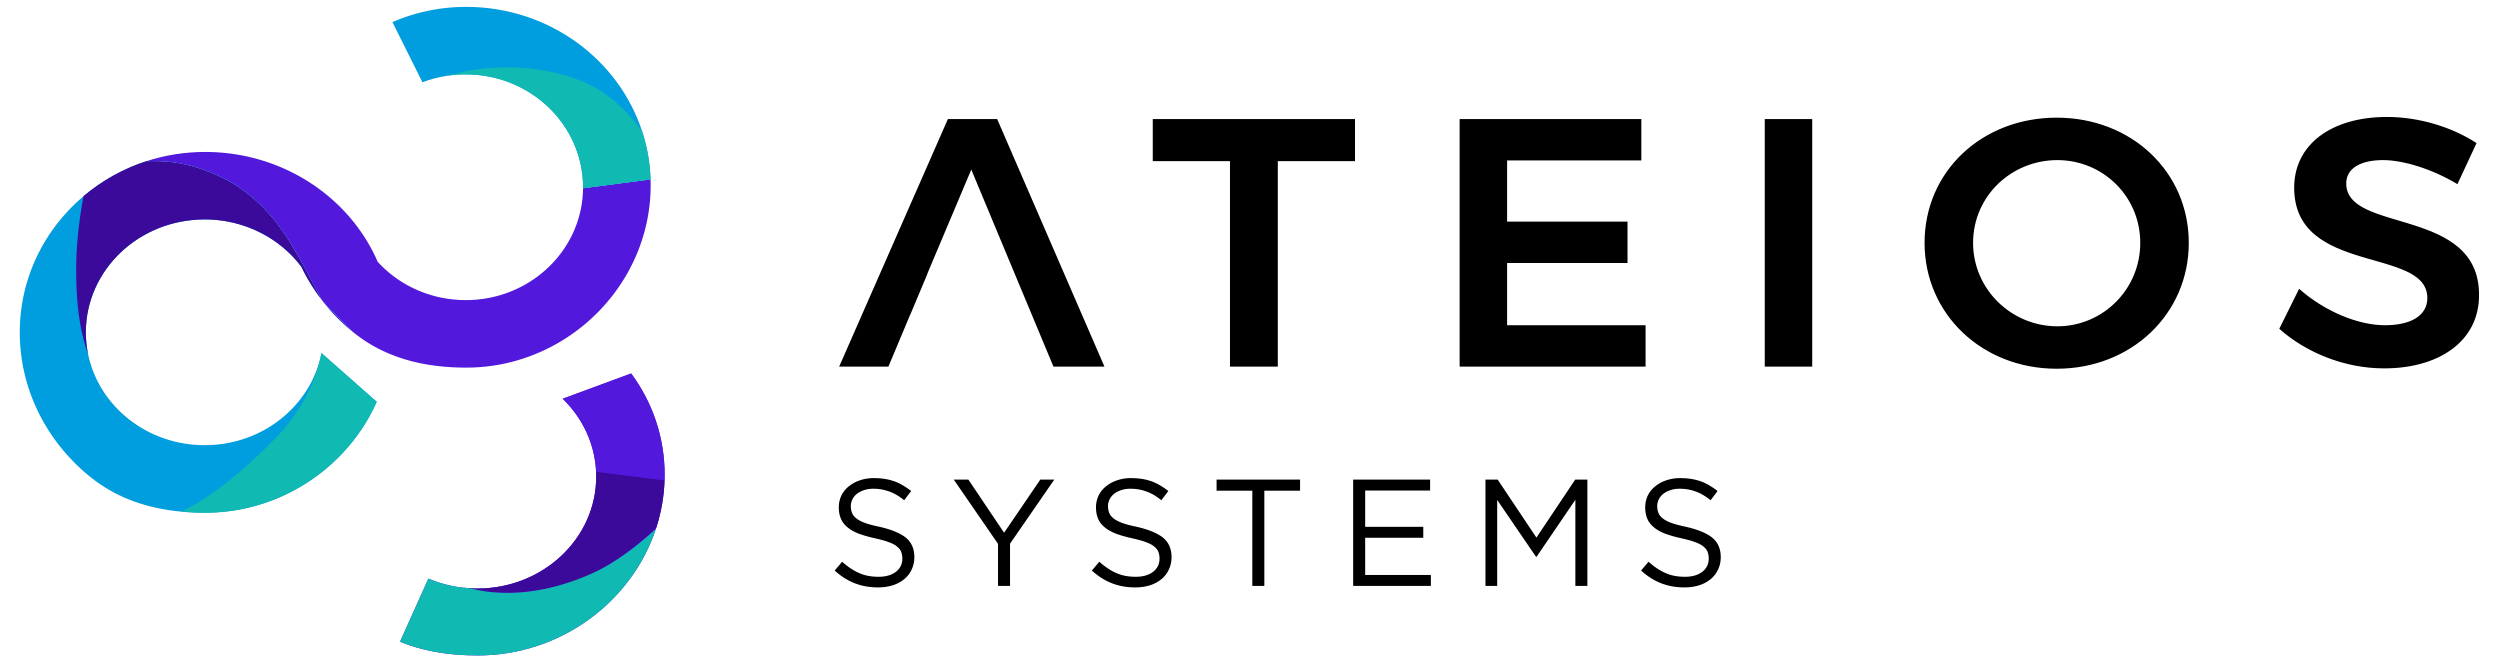 Ateios Systems Logo